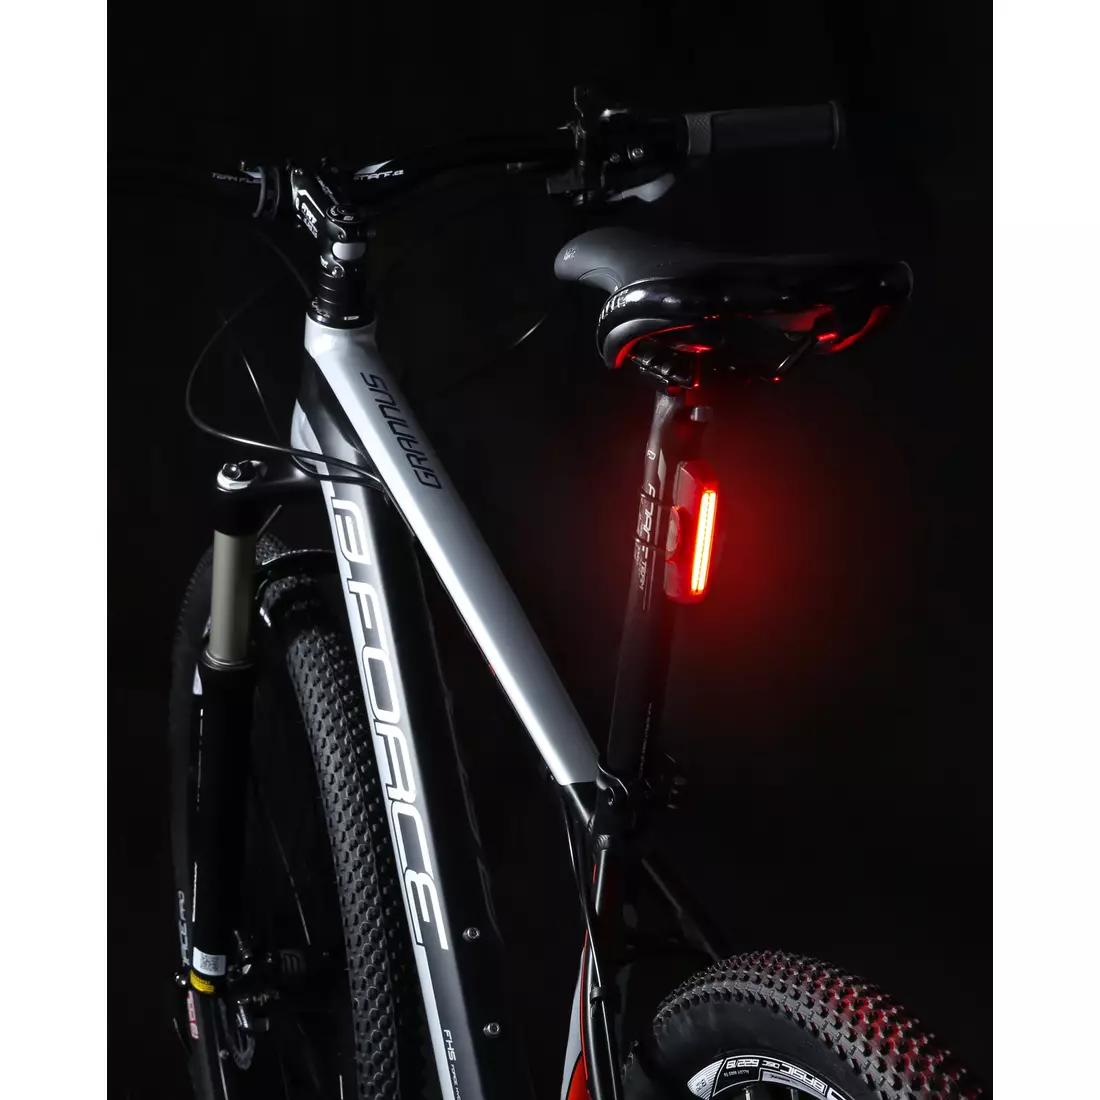 FORCE set de lumini pentru biciclete GLARE USB black 454078